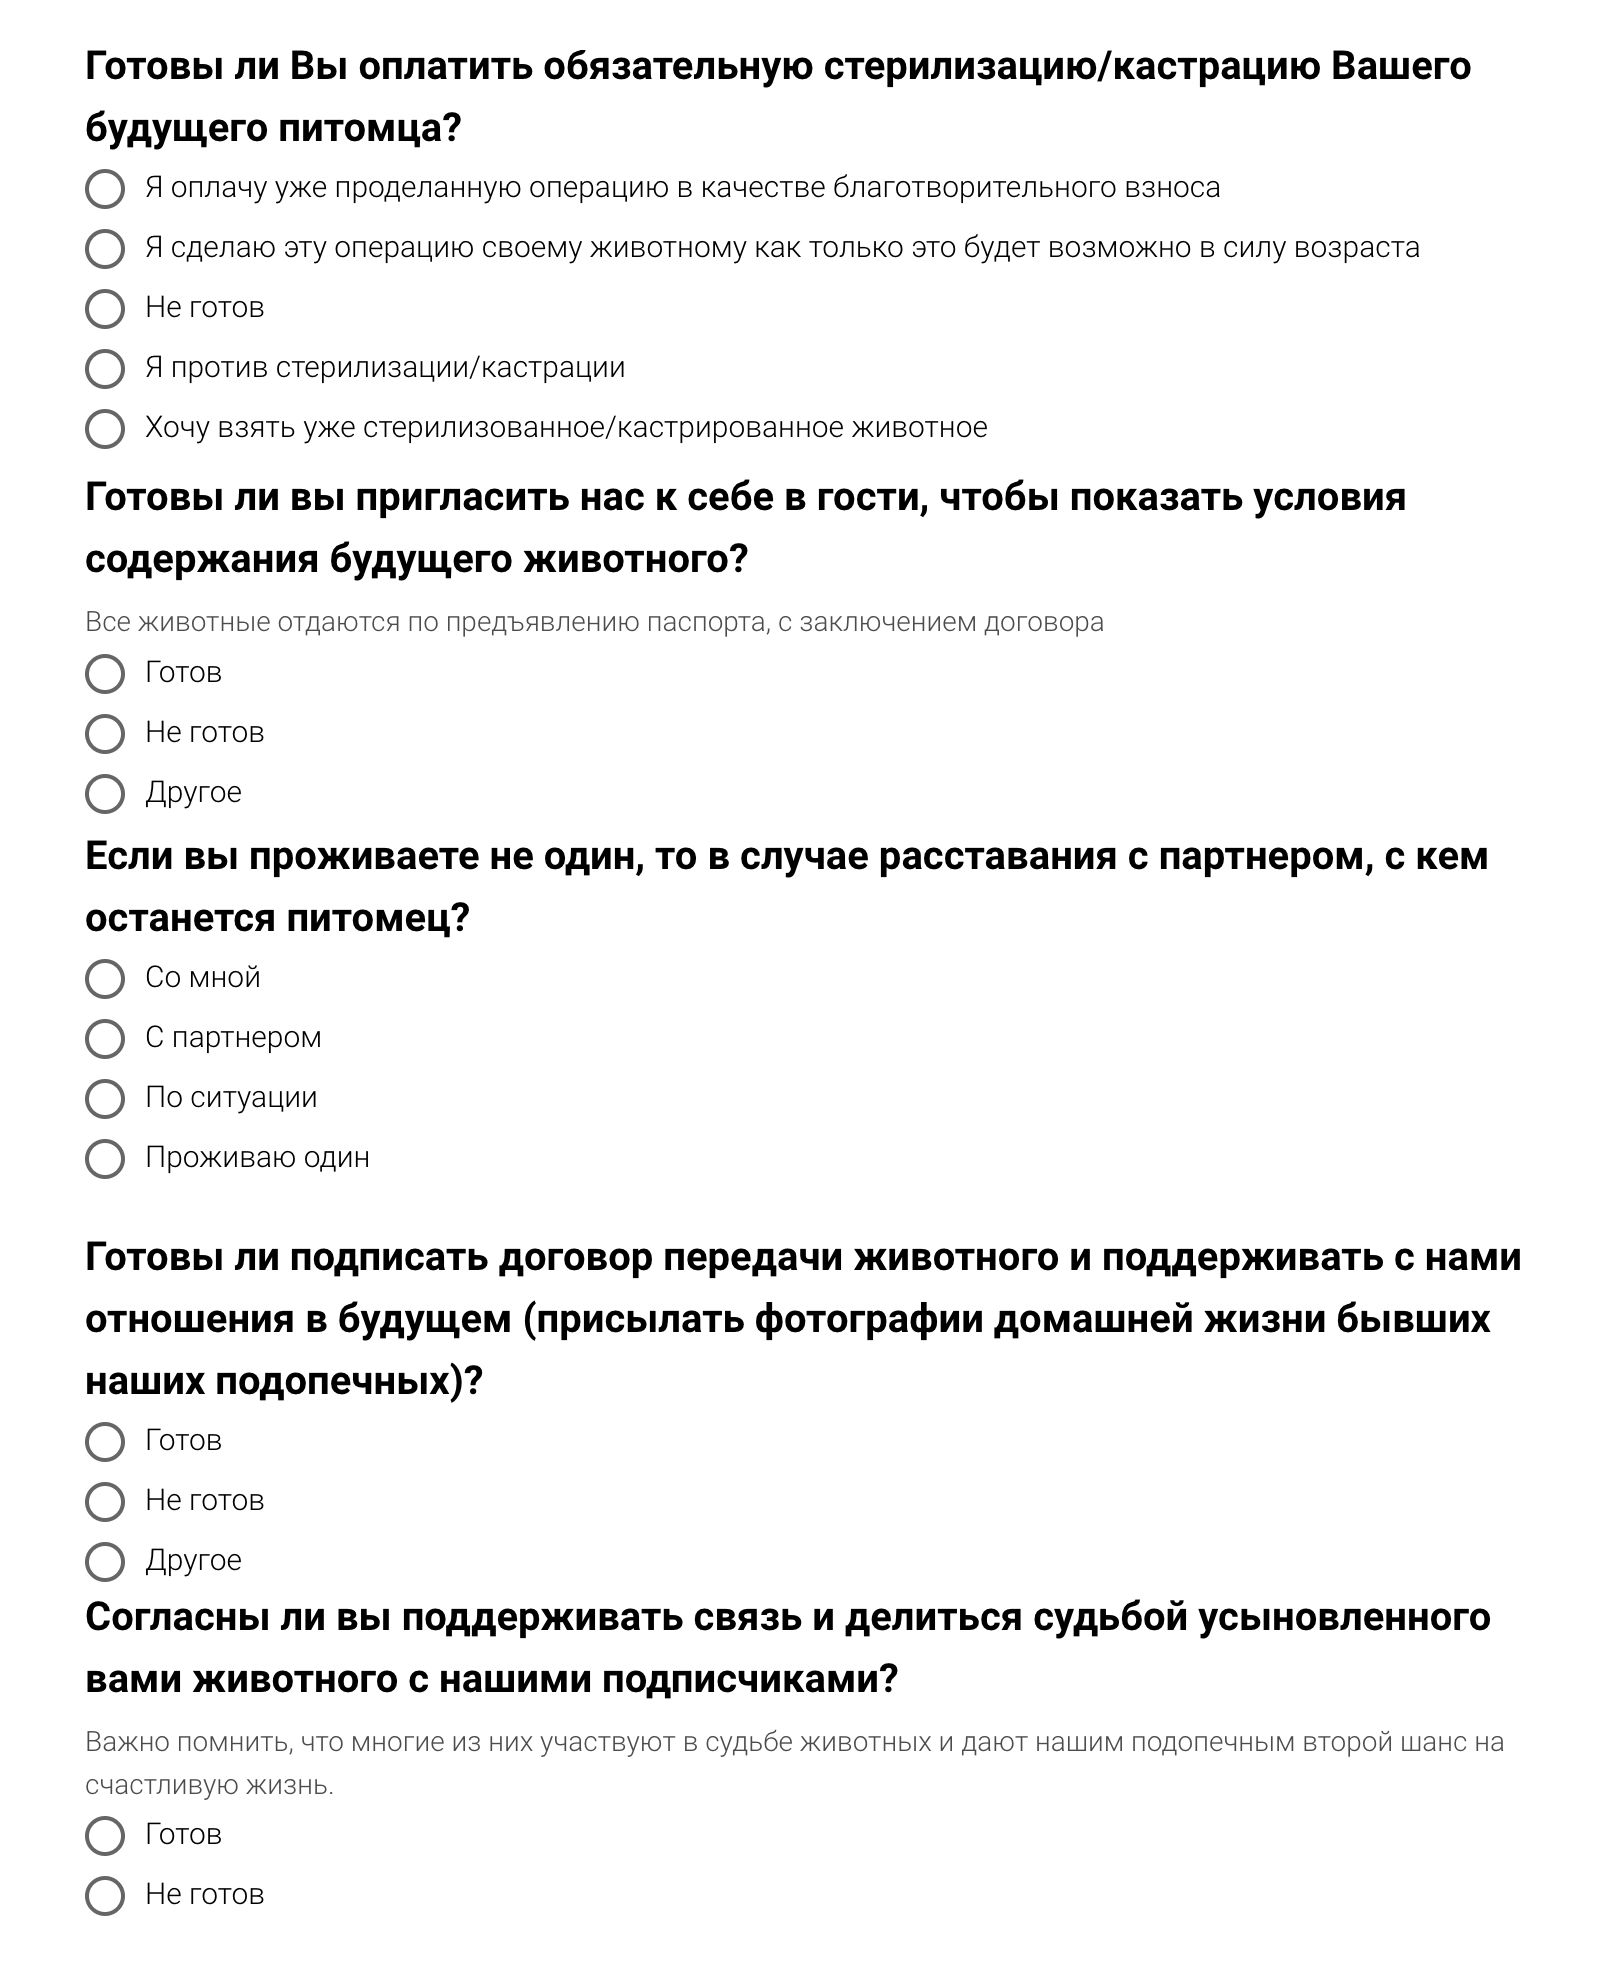 Пример анкеты, которую нужно заполнить будущему владельцу животного из приюта. Соцсети «Фейсбук» и «Инстаграм» принадлежат Meta — организации, деятельность которой признана экстремистской и запрещена на территории РФ. Источник: adoptapet.ru